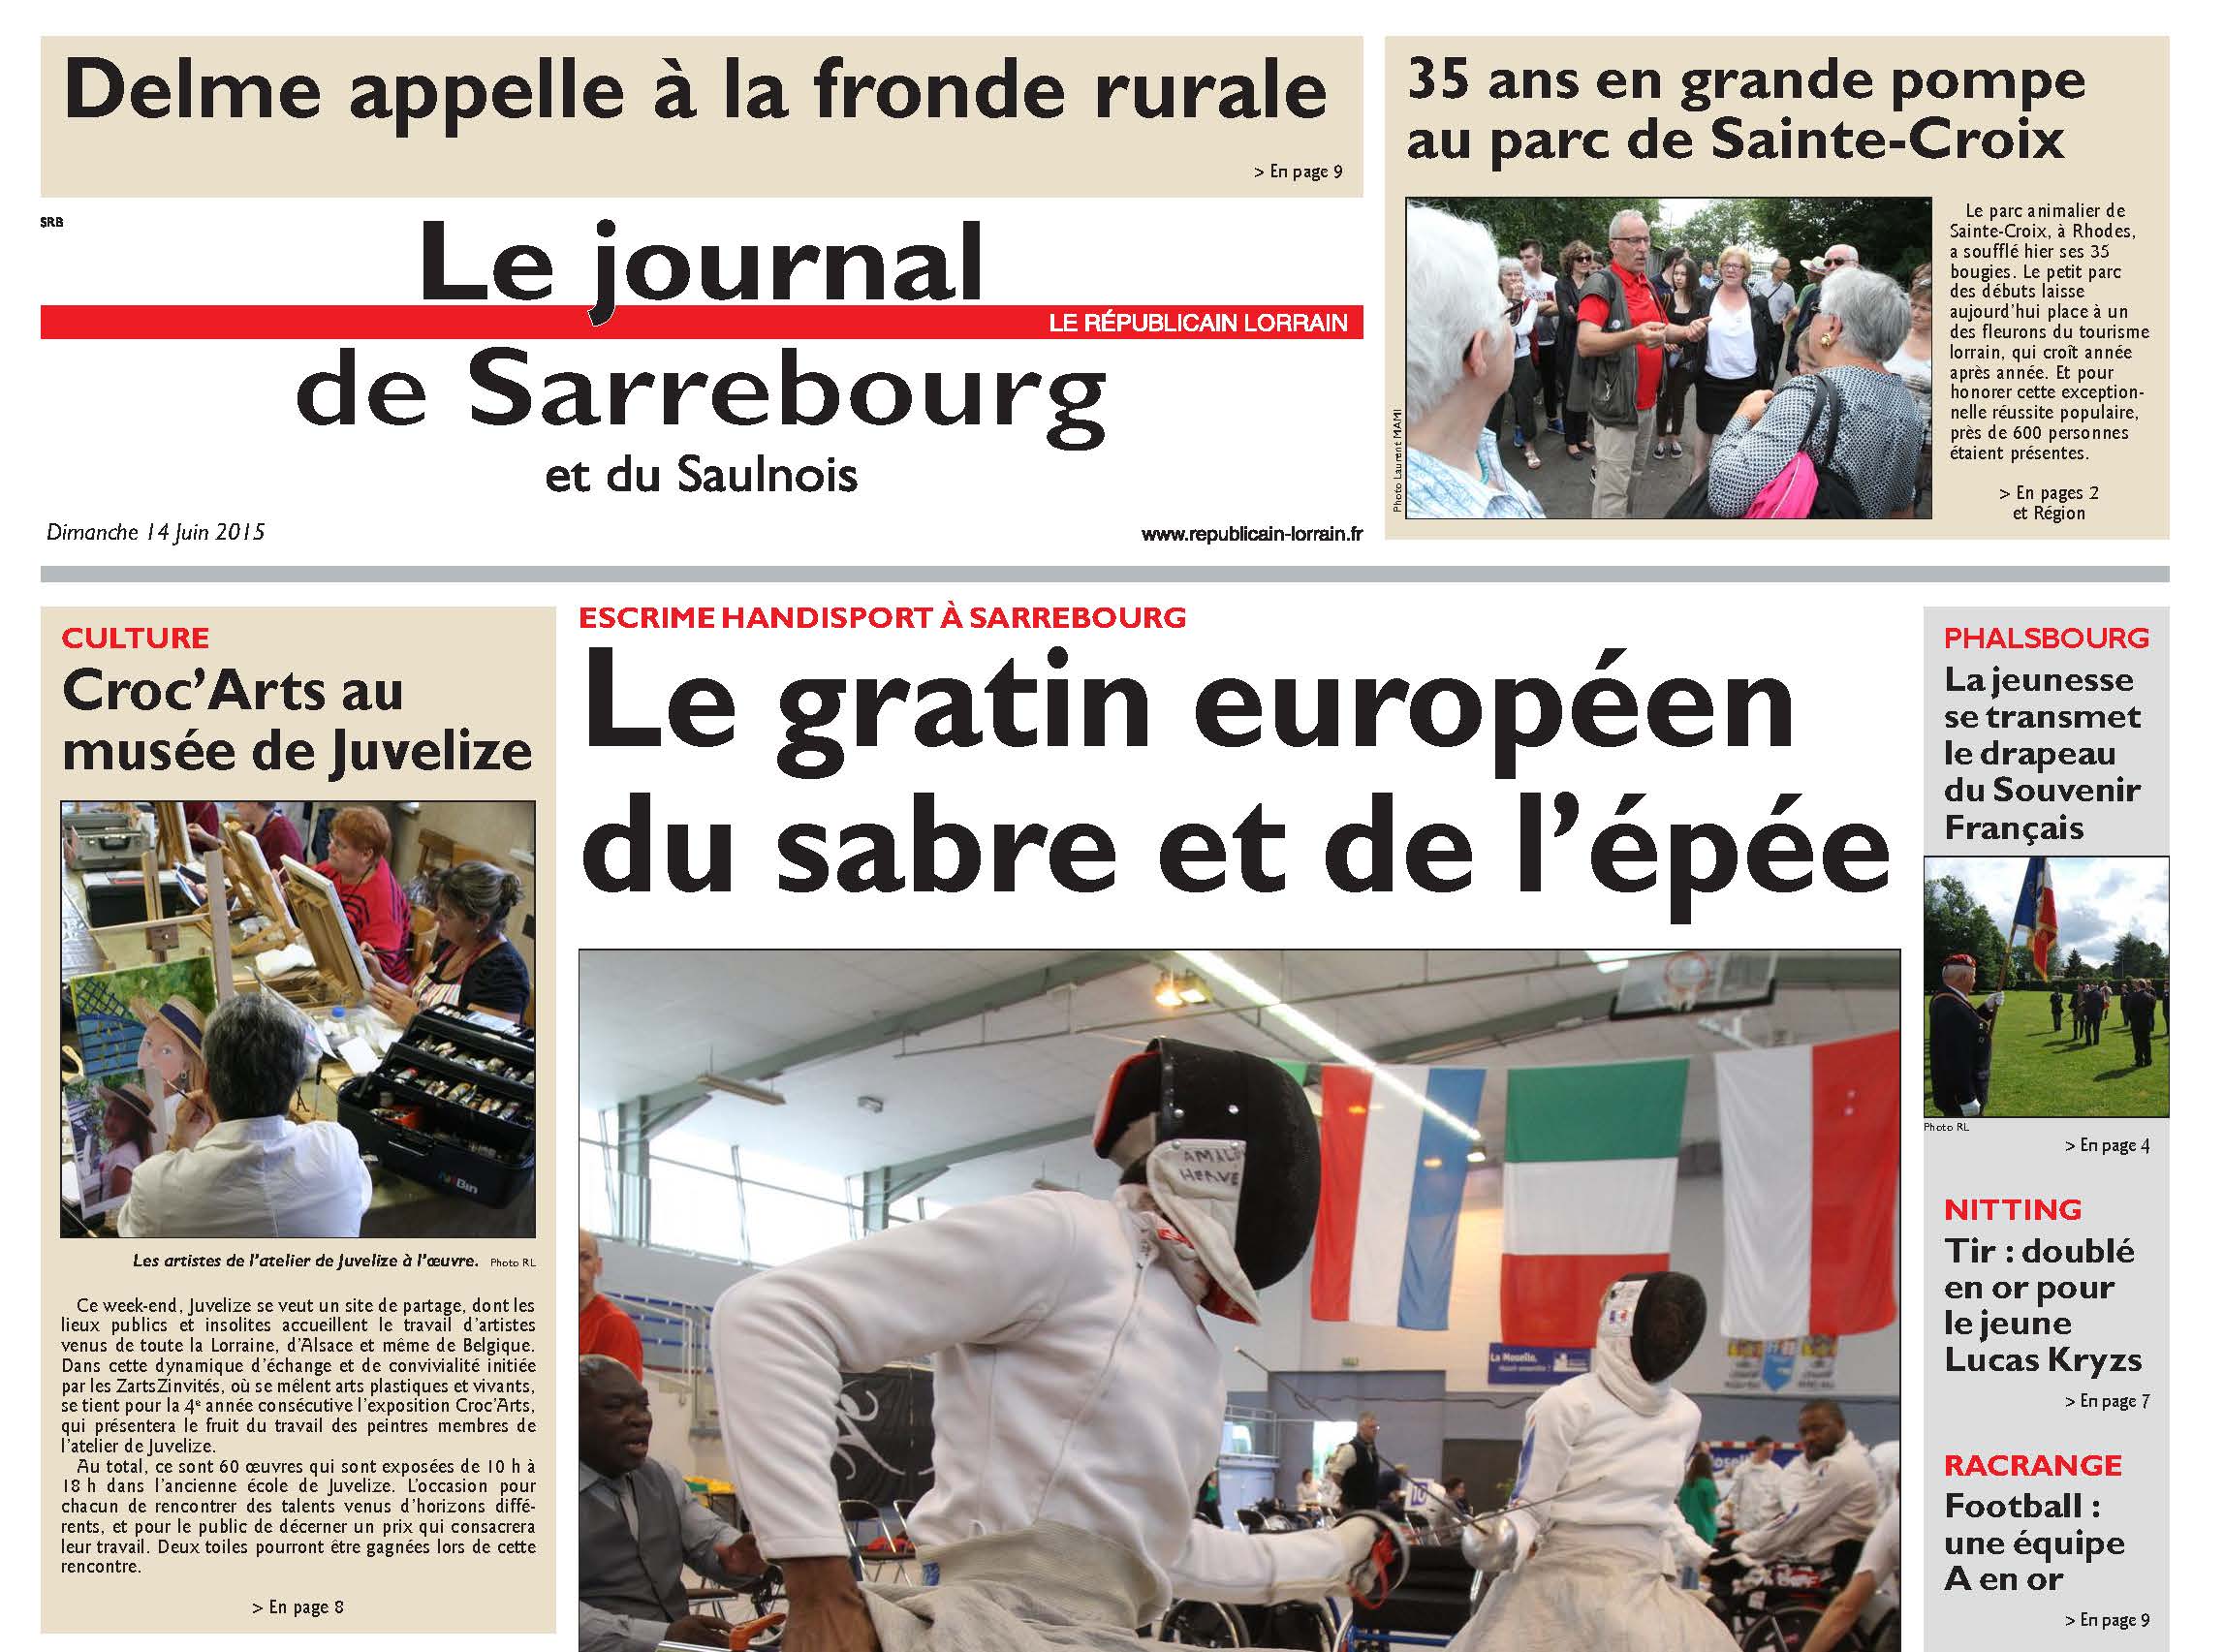 PDF Page 19 edition de sarrebourg 20150614